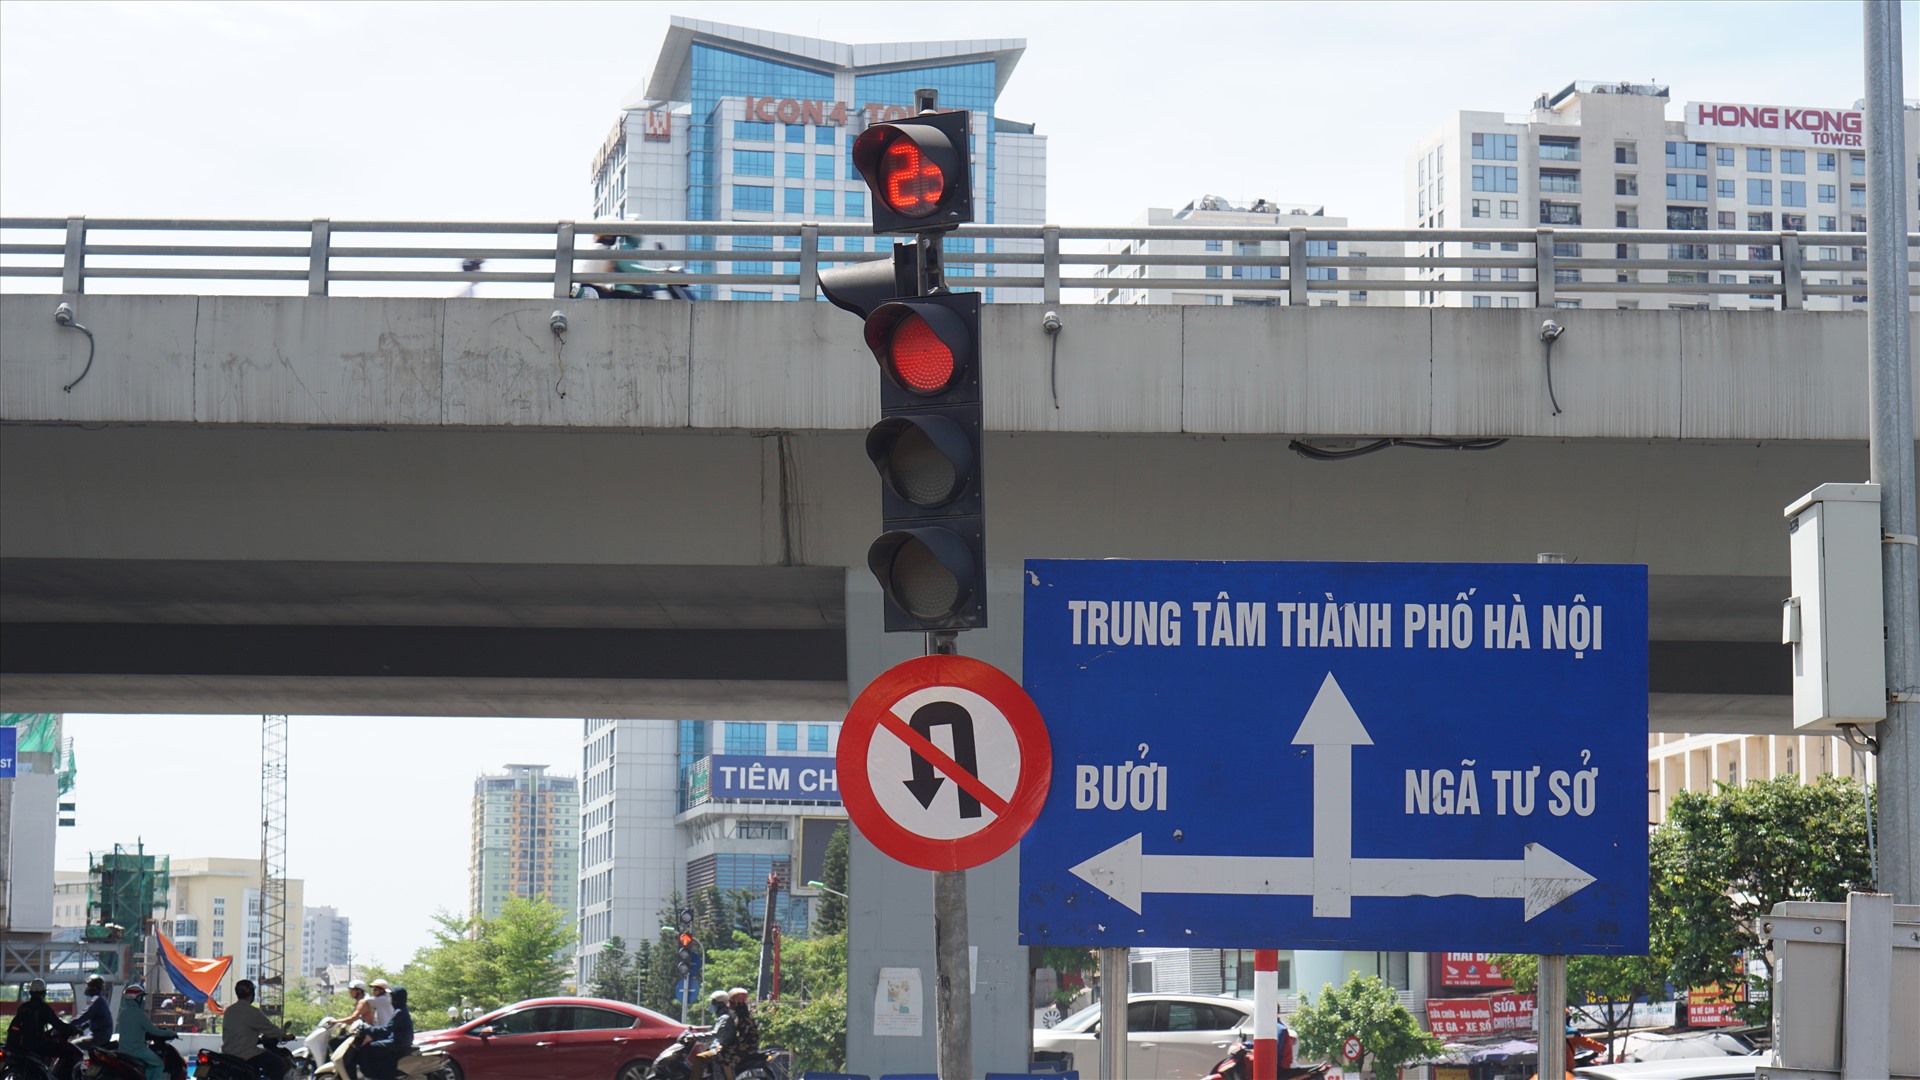 Biển báo cấm quay đầu xe được bố trí tại đầu đường Cầu Giấy. Ảnh PV